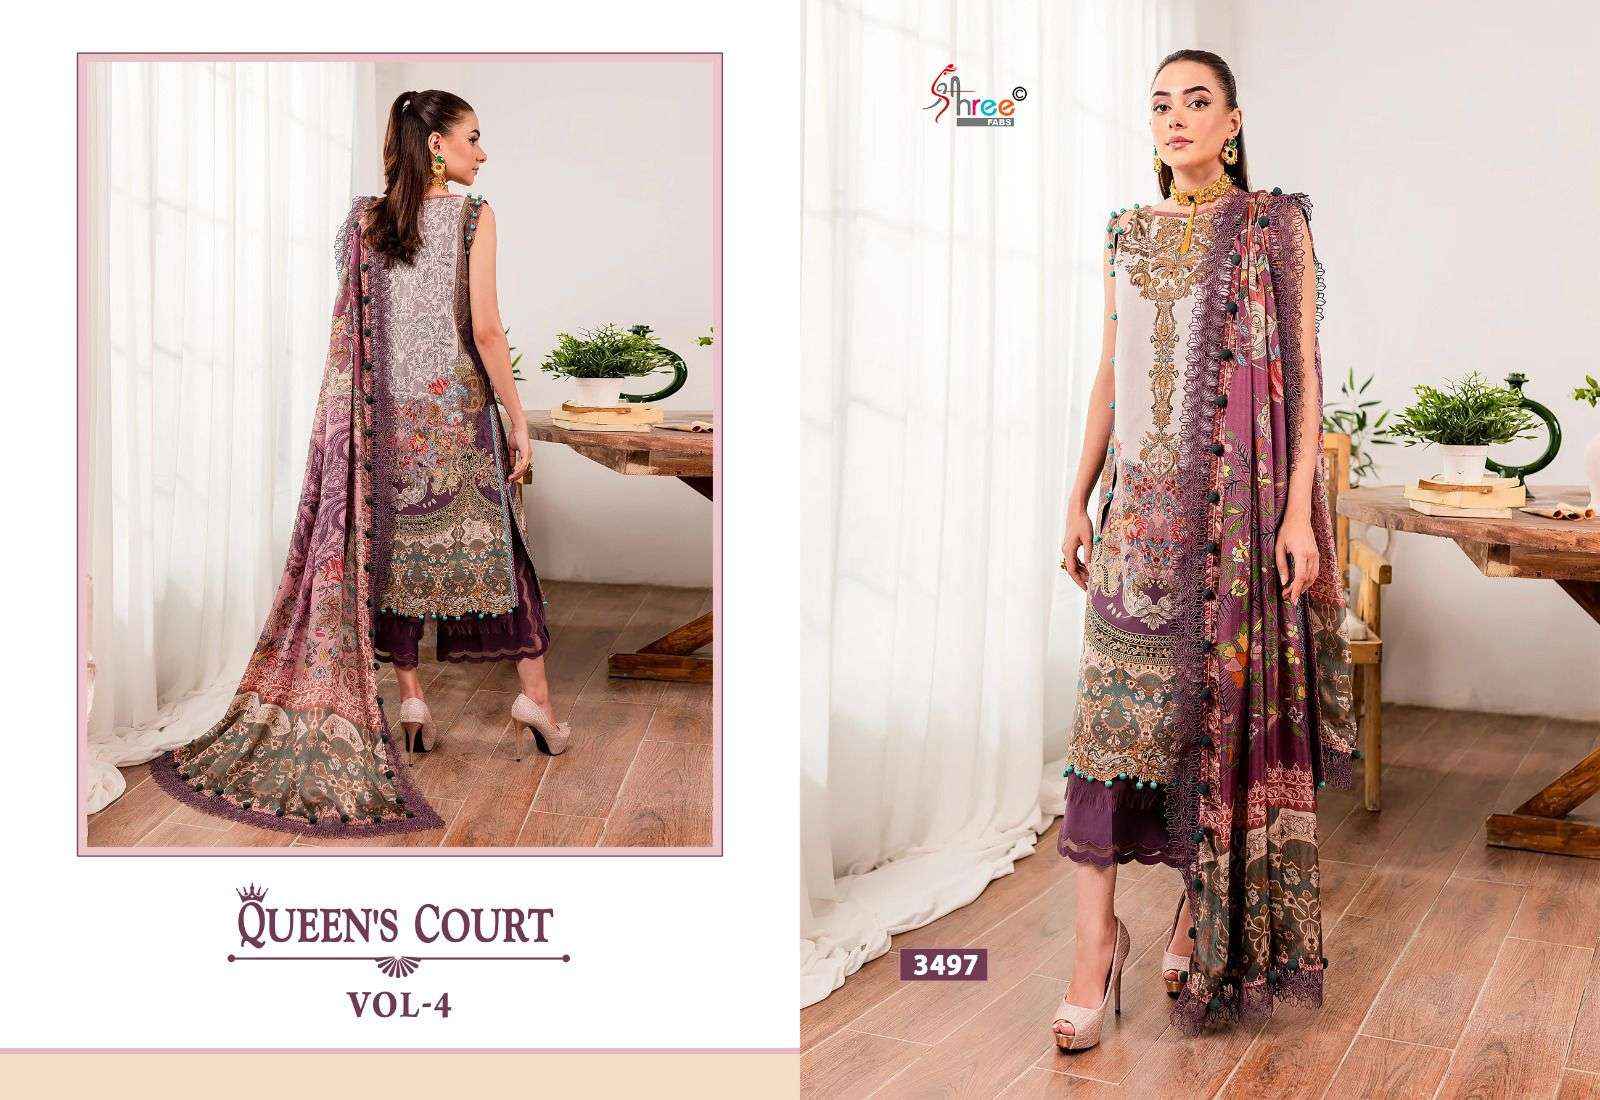 Shree Fabs Queens Court Vol 4 Cotton Dress Material 7 pcs Catalogue